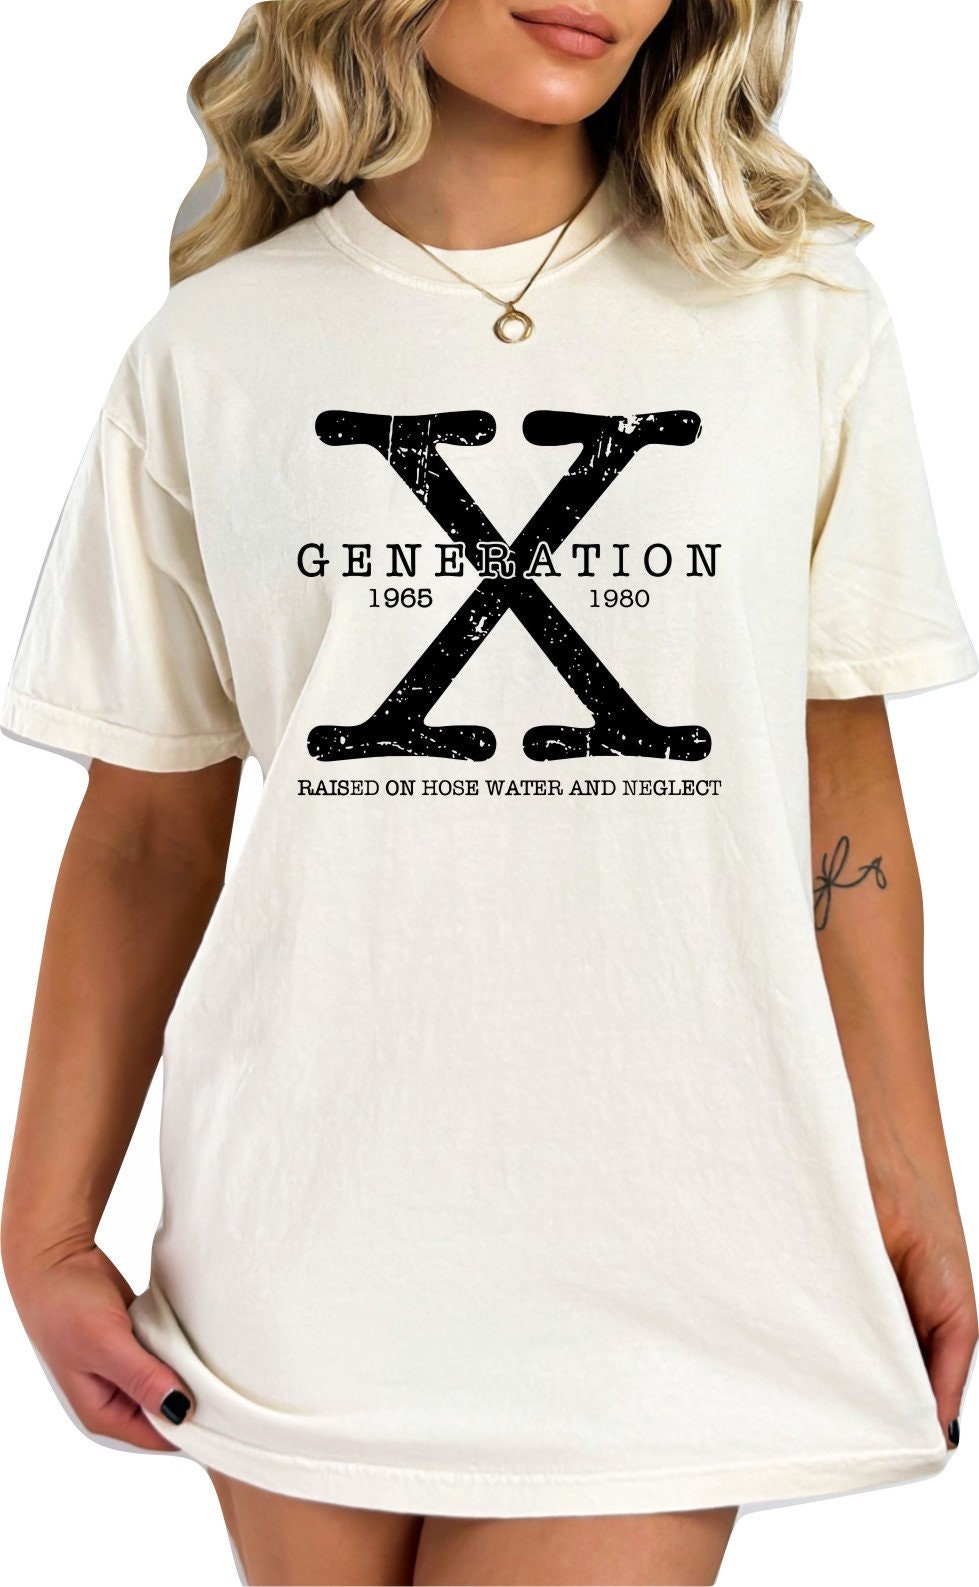 Gen X TShirt Generation X Shirt Funny TShirt Generation X T-Shirt Raised on Hose Water and Neglect Shirt Generation X T-Shirt